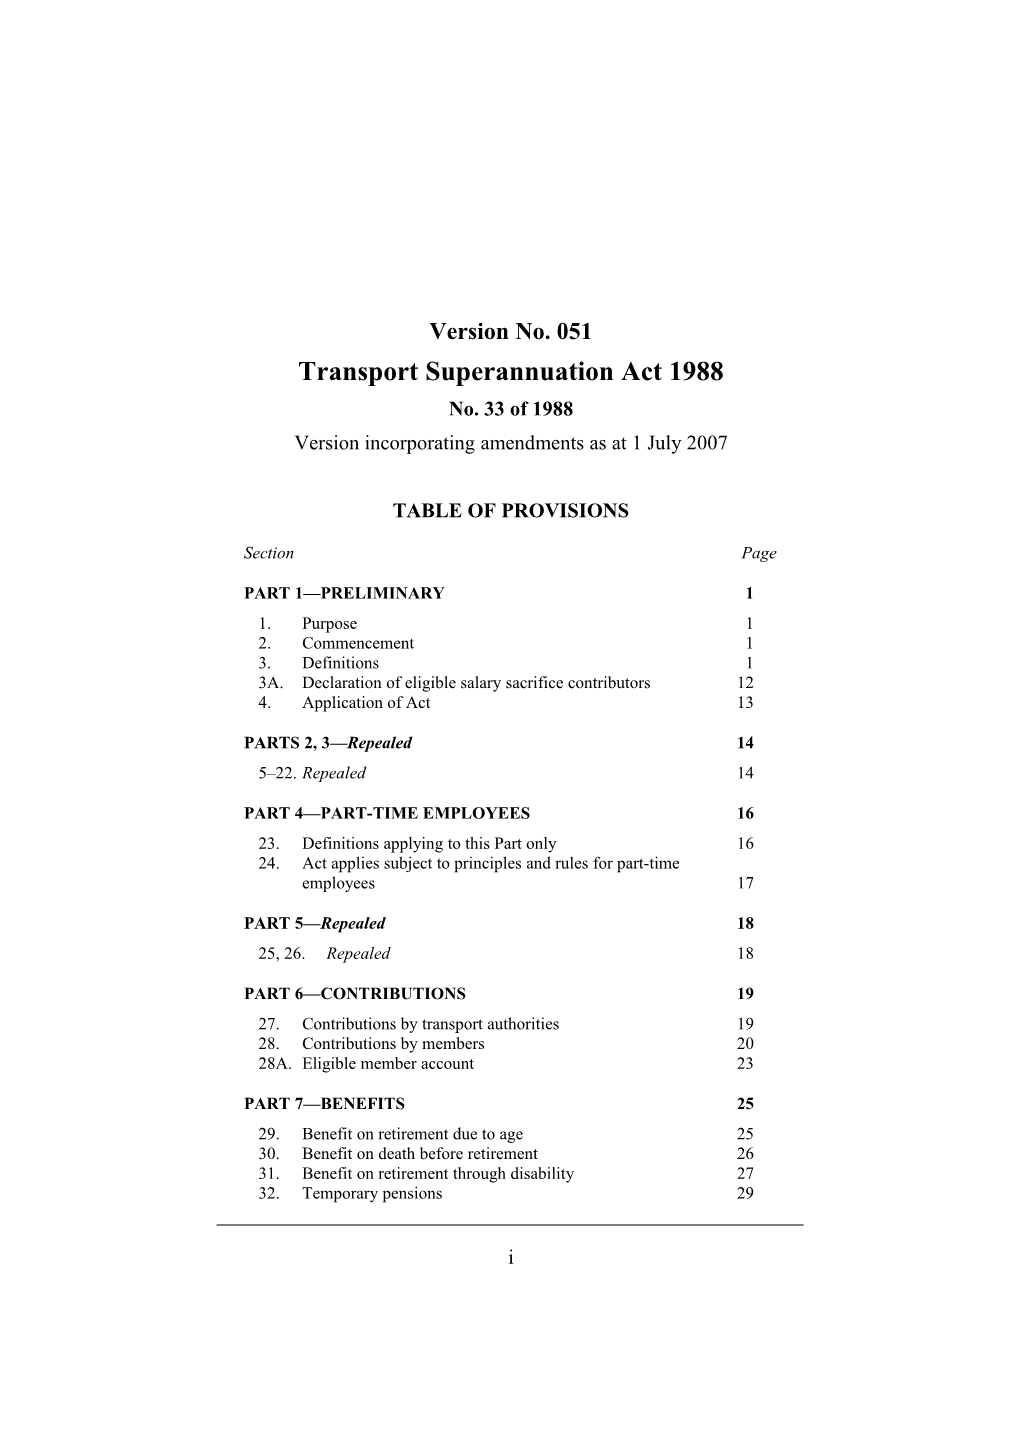 Transport Superannuation Act 1988